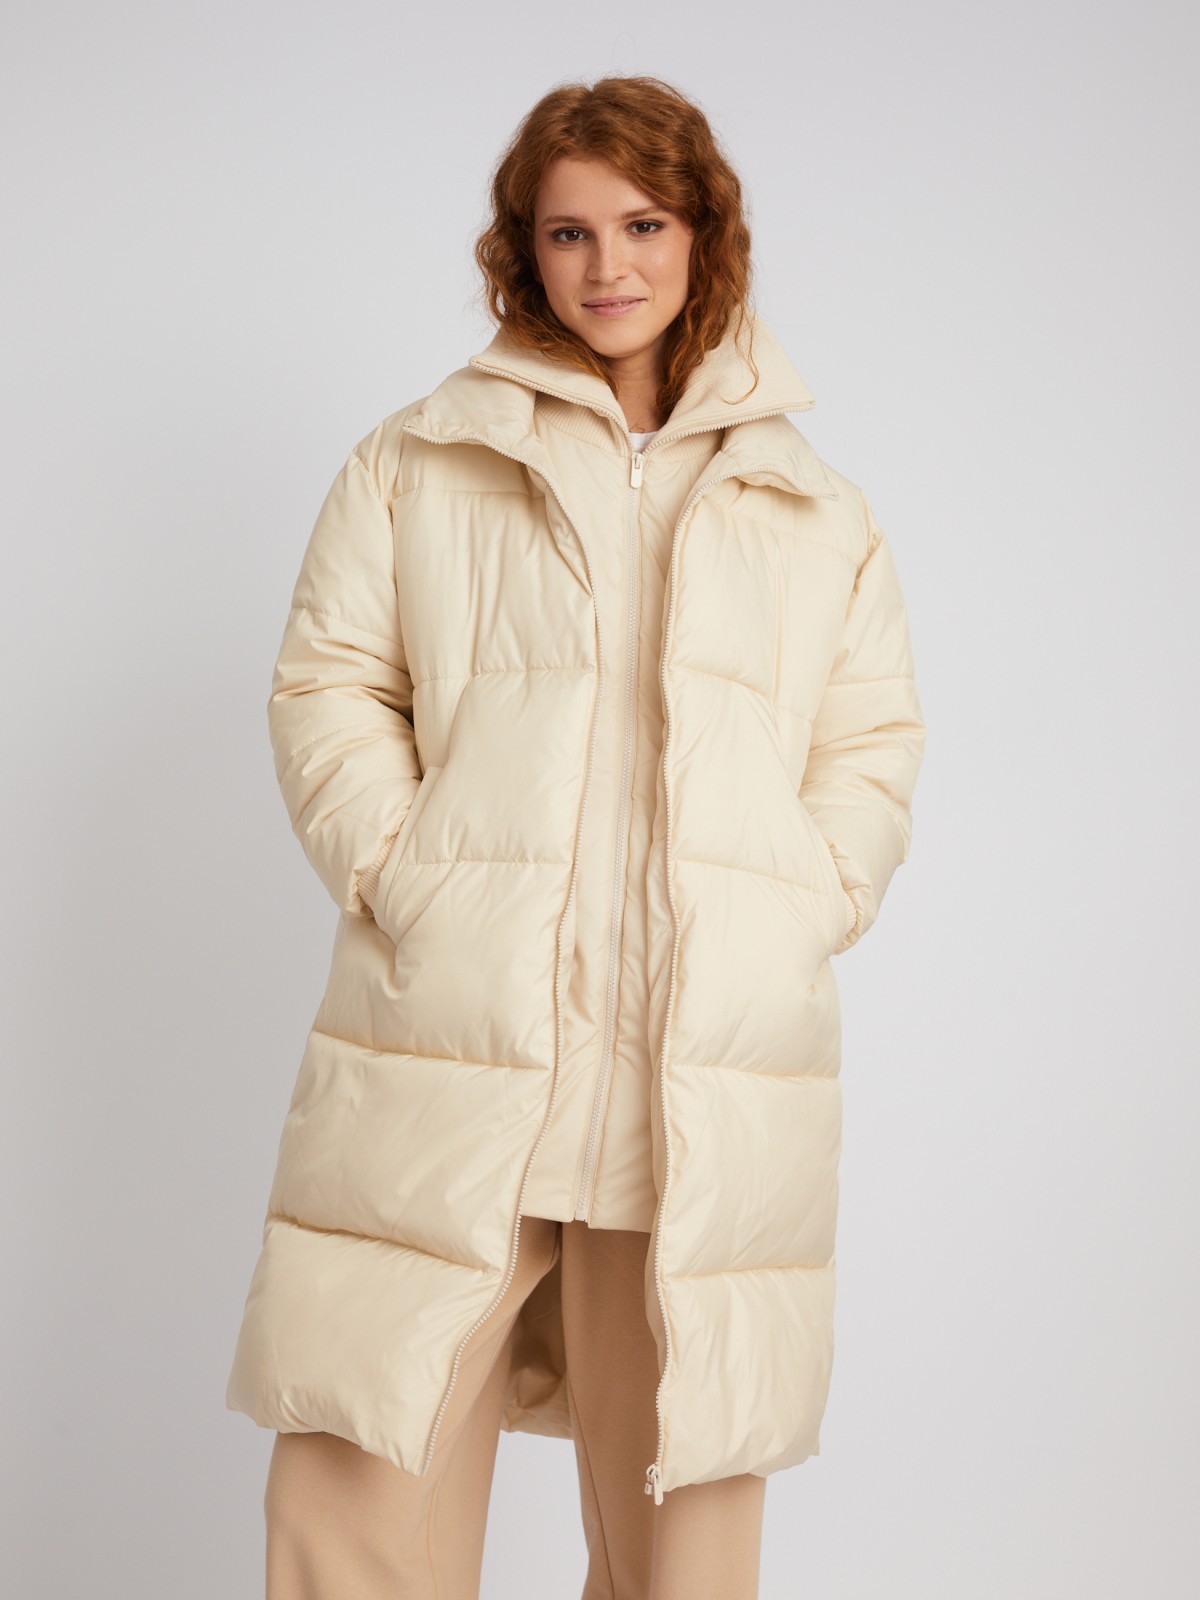 Длинная тёплая куртка-пальто с высоким двойным воротником и вшитой манишкой на молнии